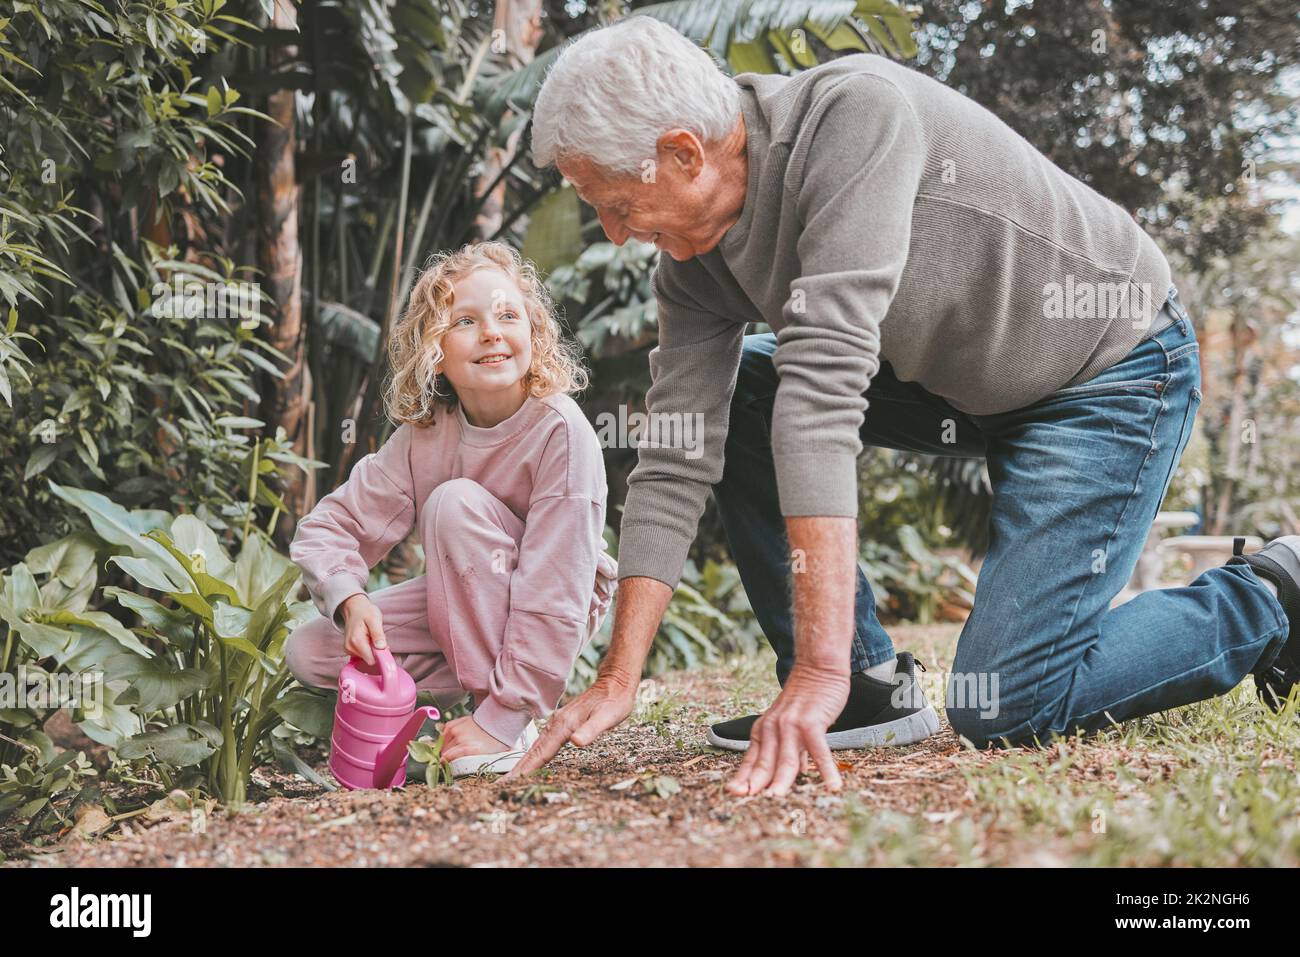 Der Schlamm wäscht sich weg, aber die Erinnerungen bleiben für immer bestehen. Aufnahme eines entzückenden kleinen Mädchens, das mit ihrem Großvater im Garten arbeitet. Stockfoto